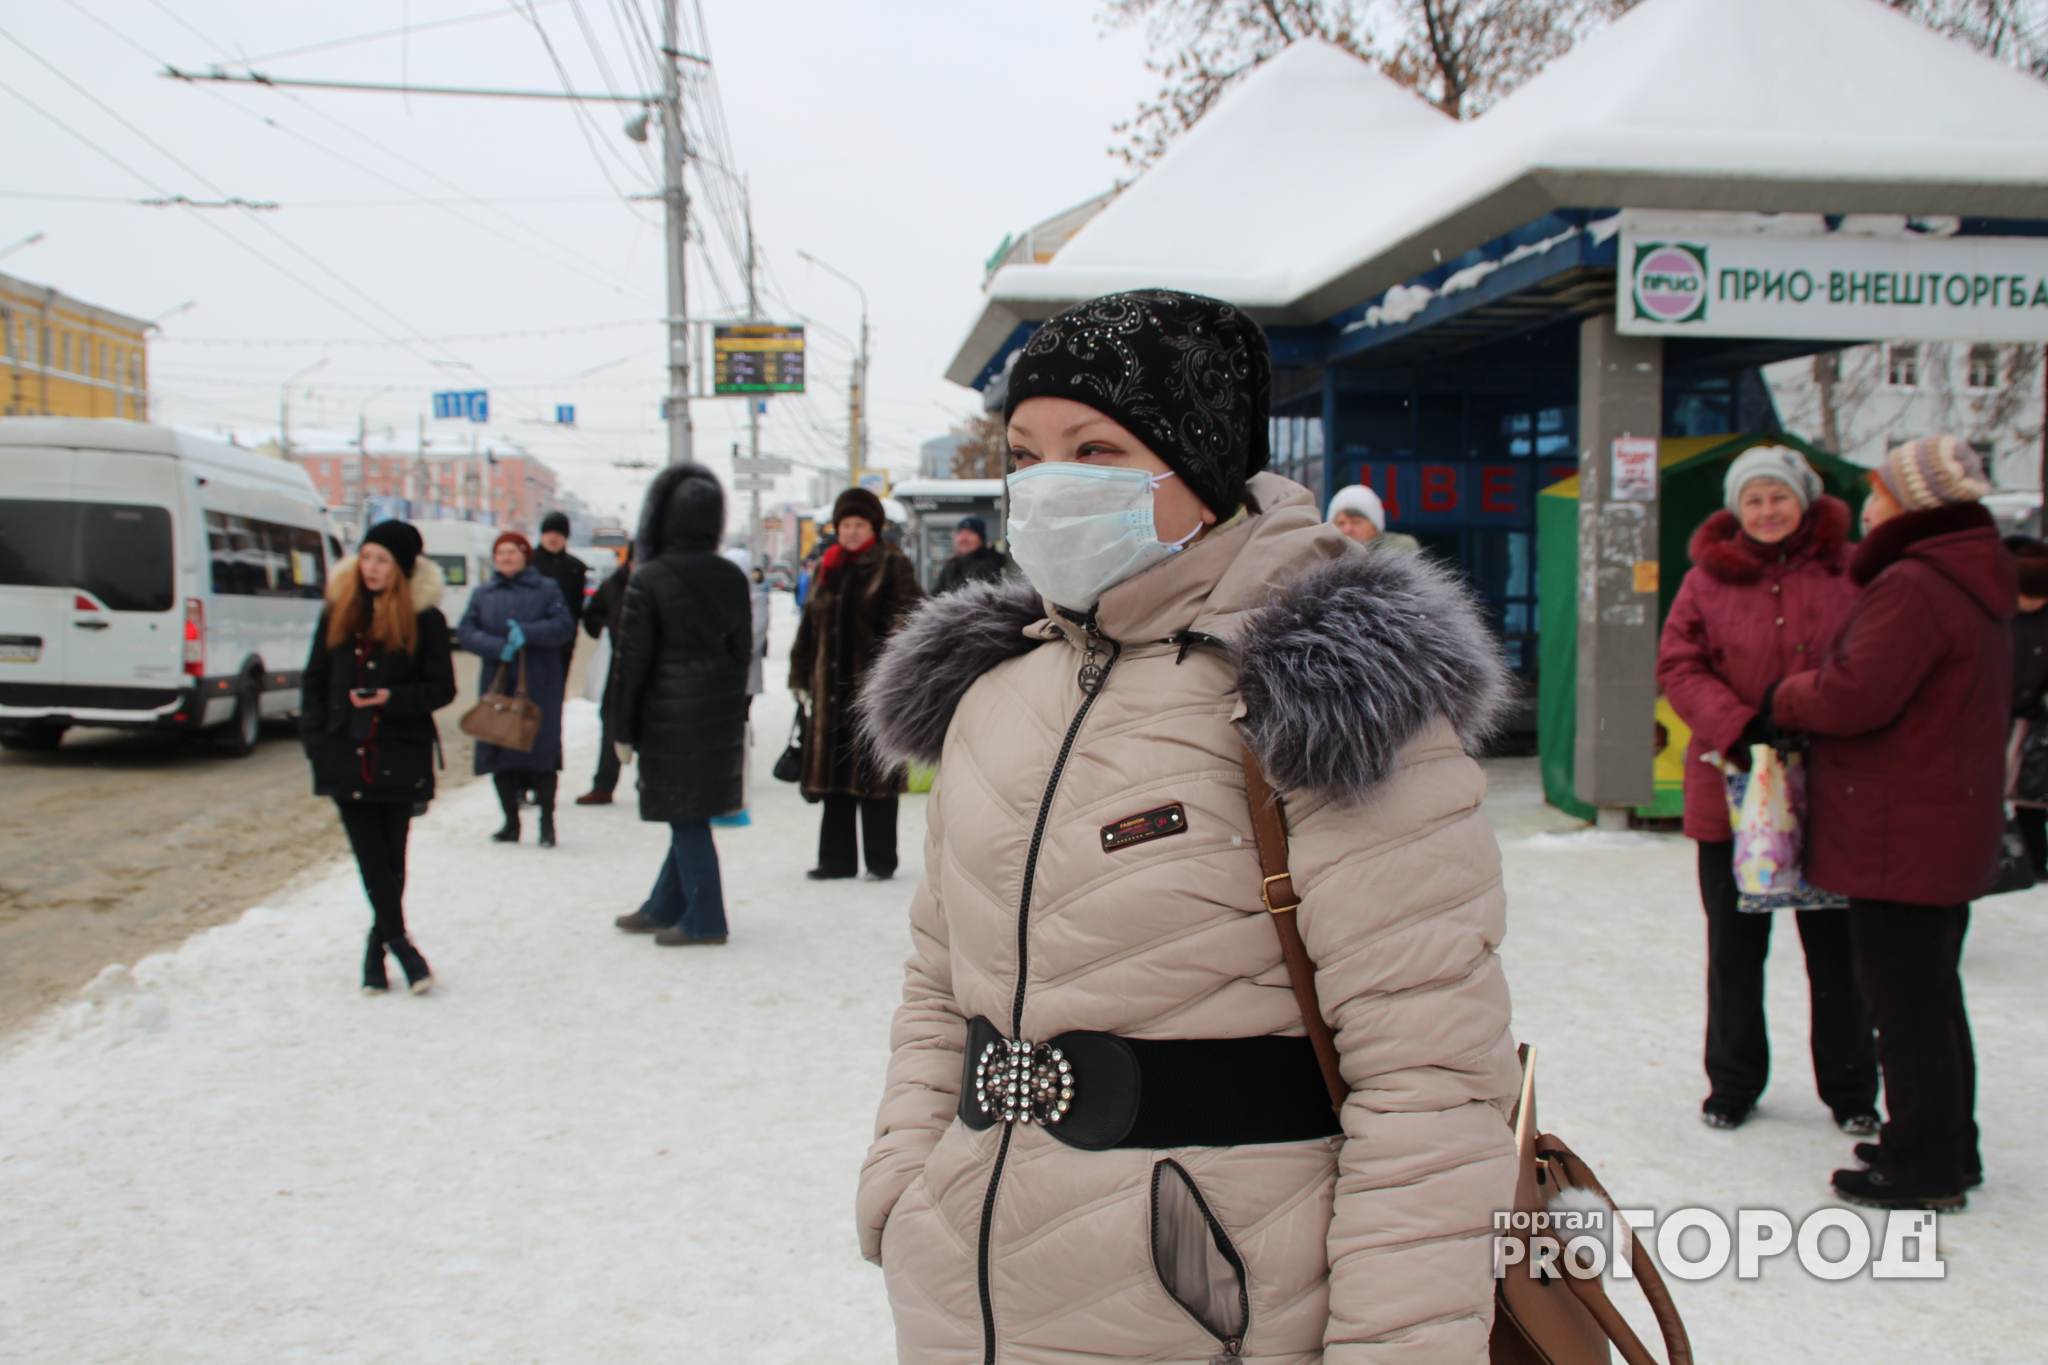 Специалисты рассказали, где в Кирове самый грязный воздух